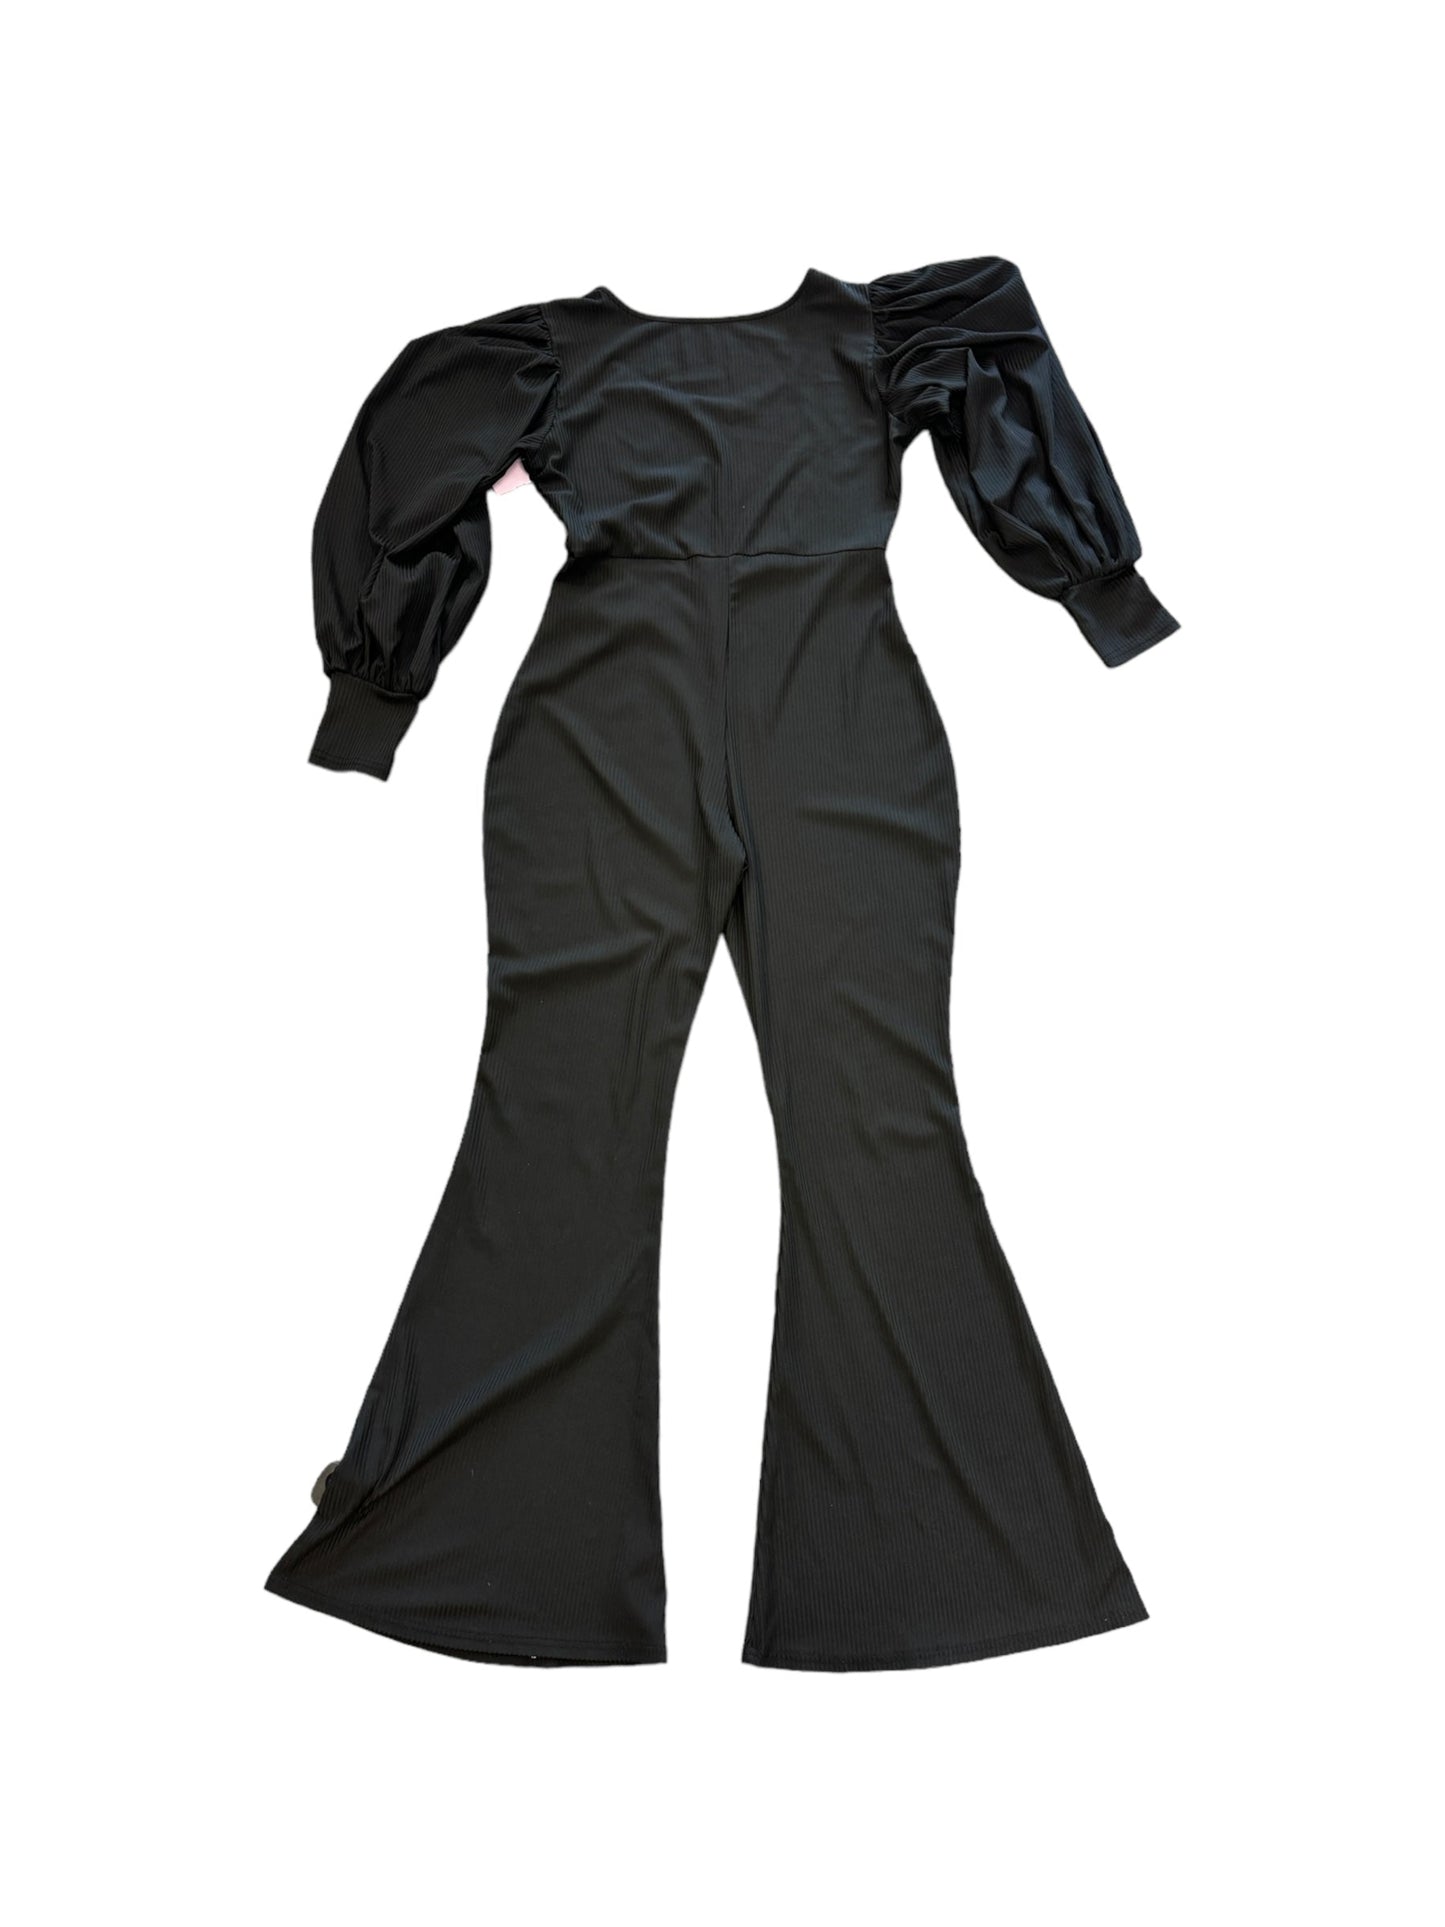 Black Jumpsuit Clothes Mentor, Size 10